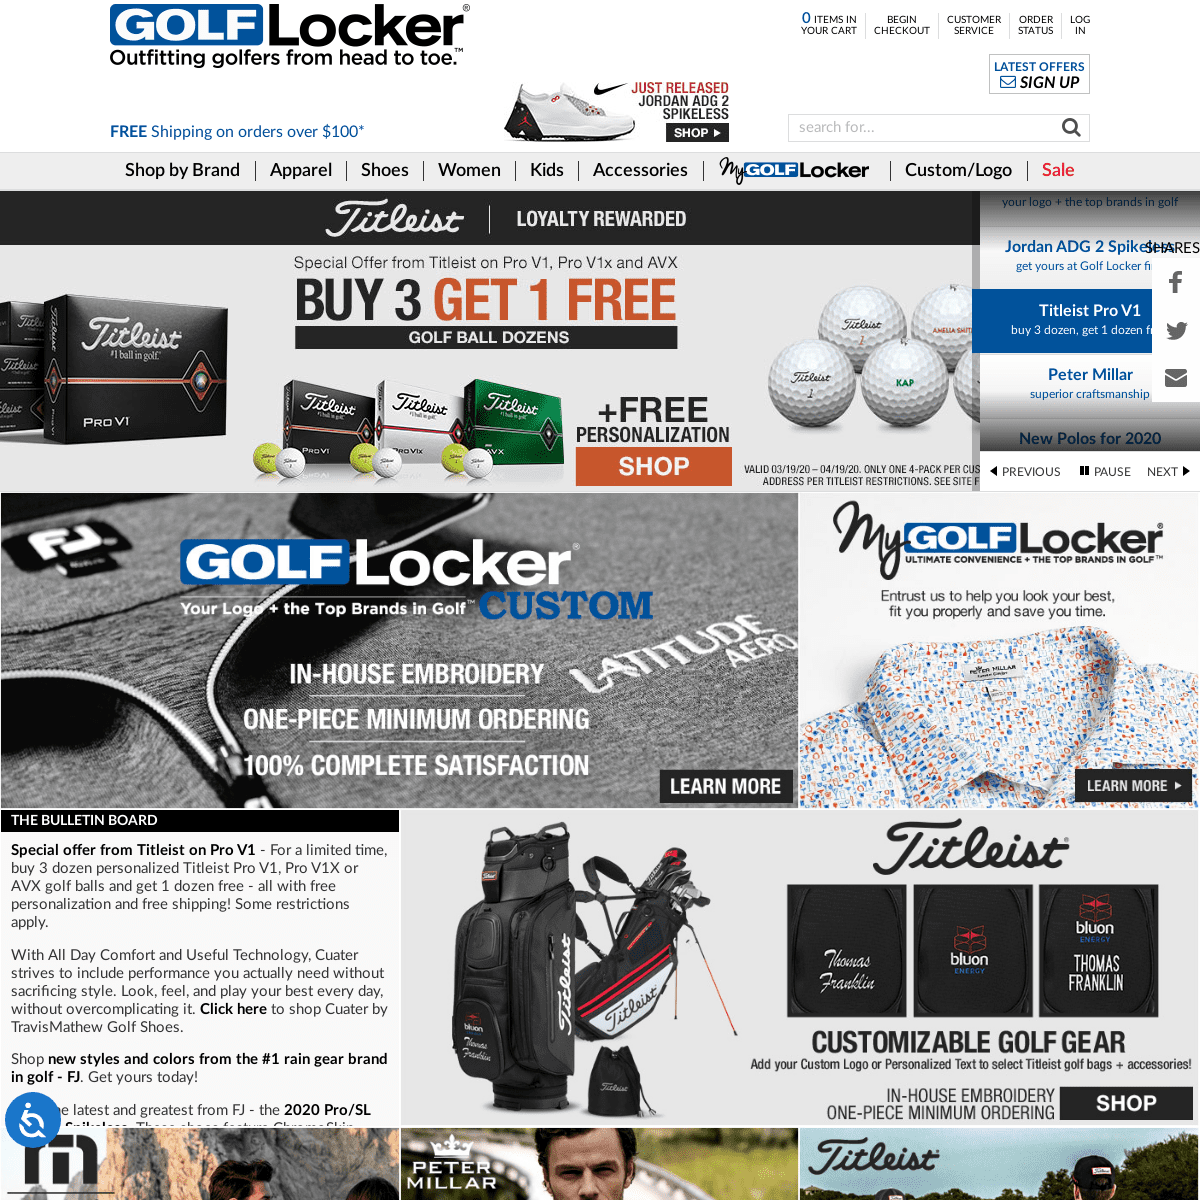 A complete backup of golflocker.com